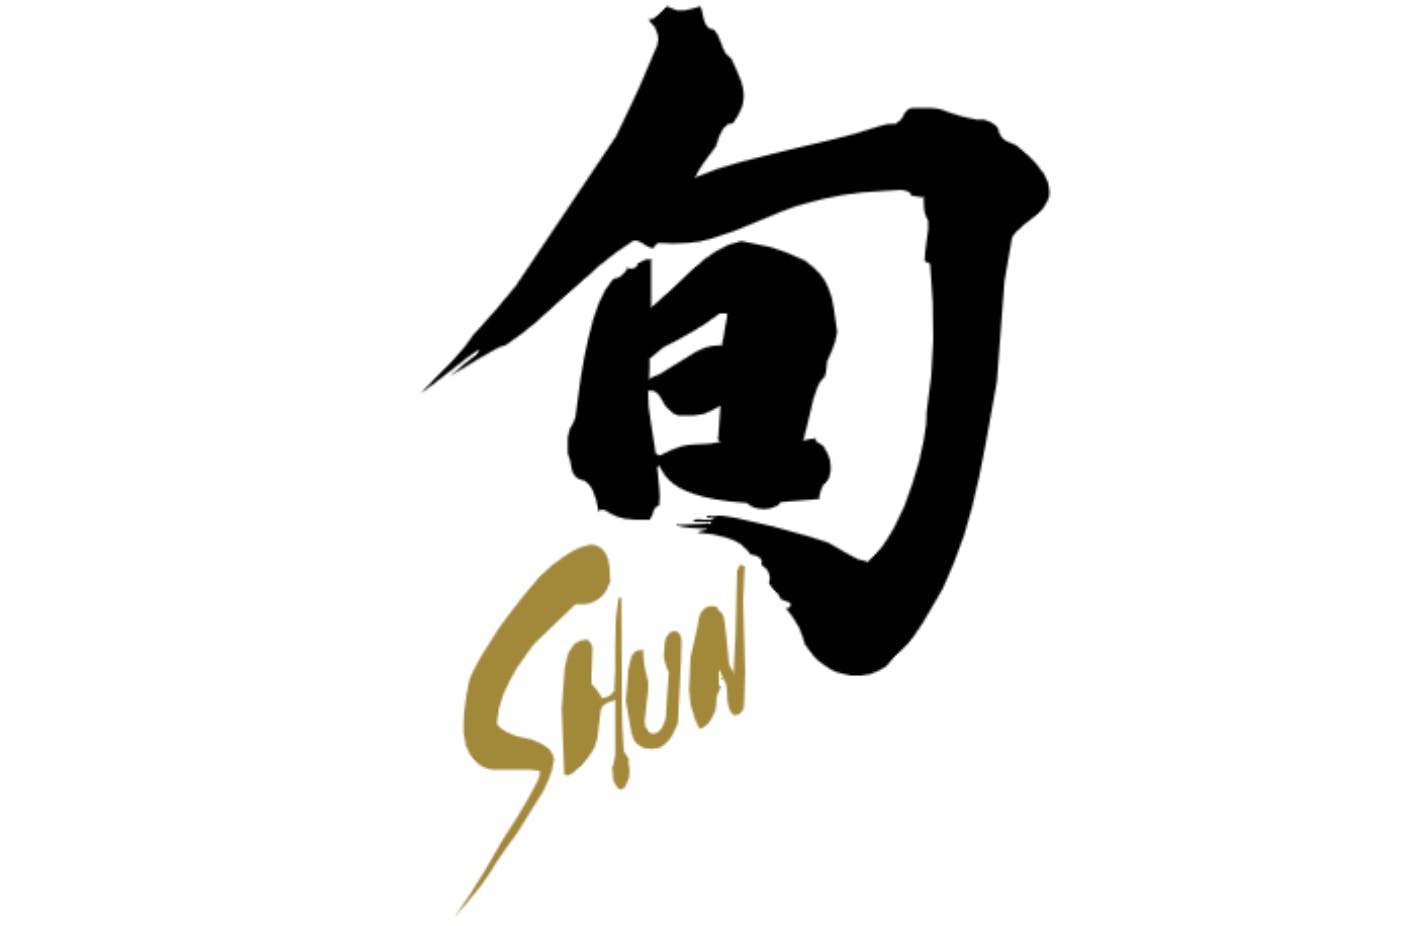 The Shun Cutlery logo. 